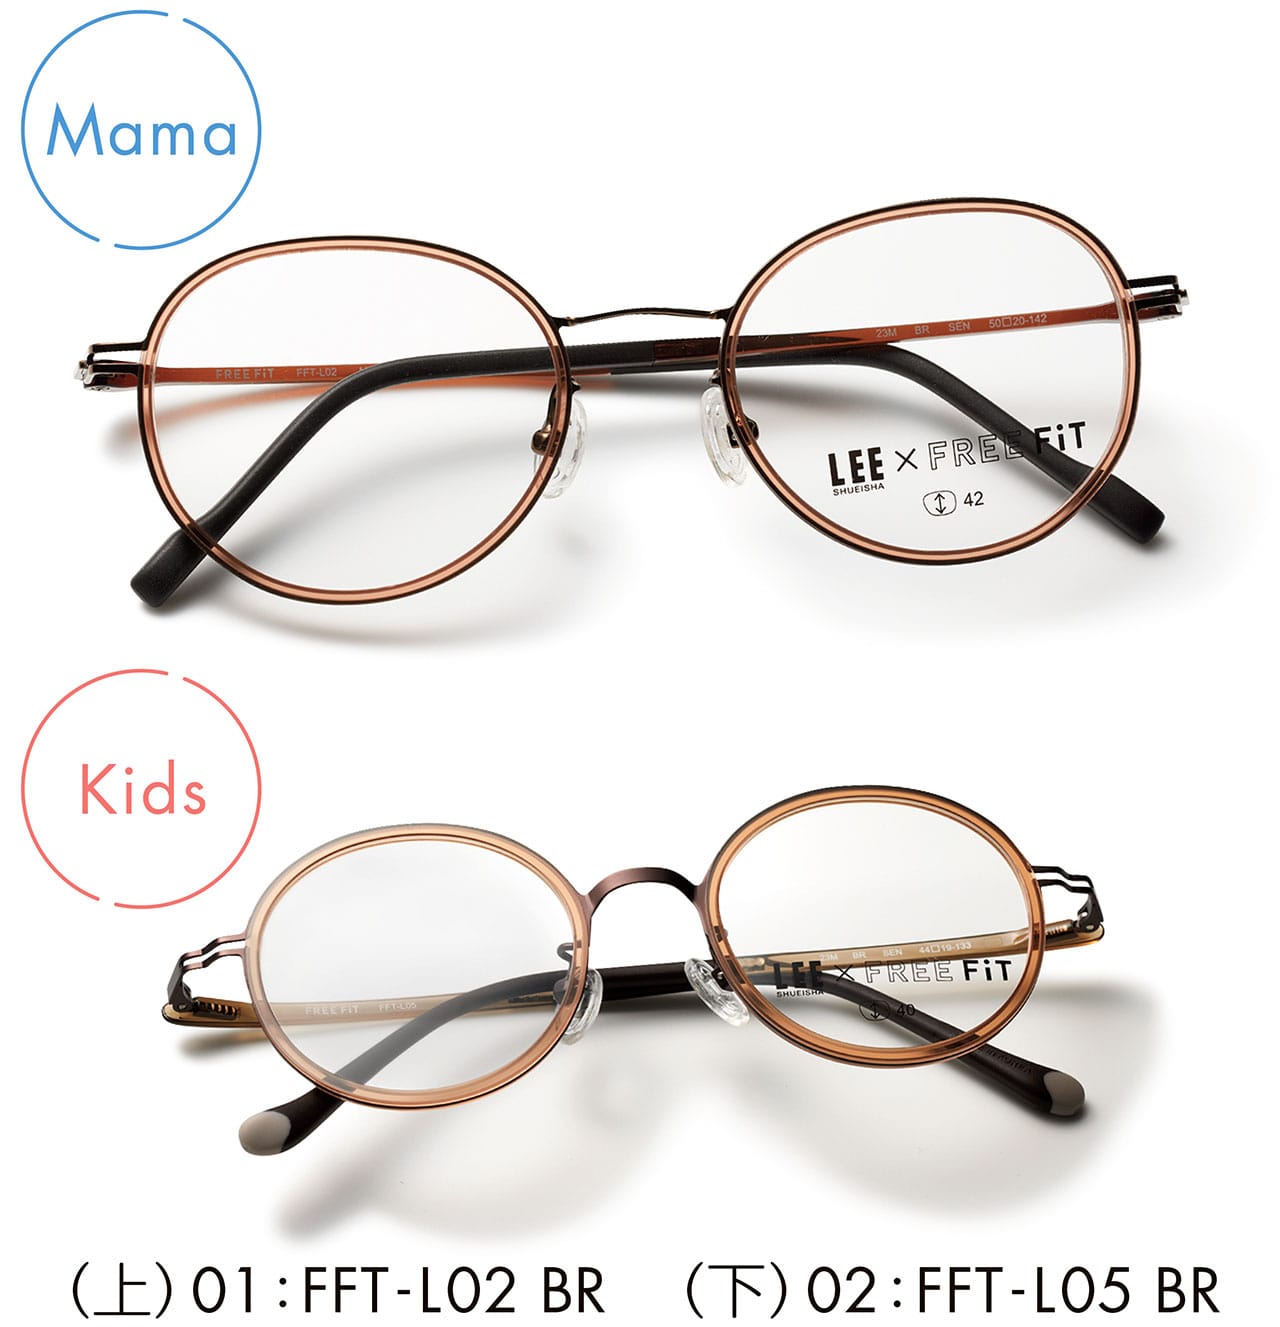 （上）Mama　01:FFT-L02 BR　メガネ￥16500／眼鏡市場（フリーフィット）　（下）Kids　02:FFT-L05 BR　メガネ￥13200／眼鏡市場（フリーフィット）